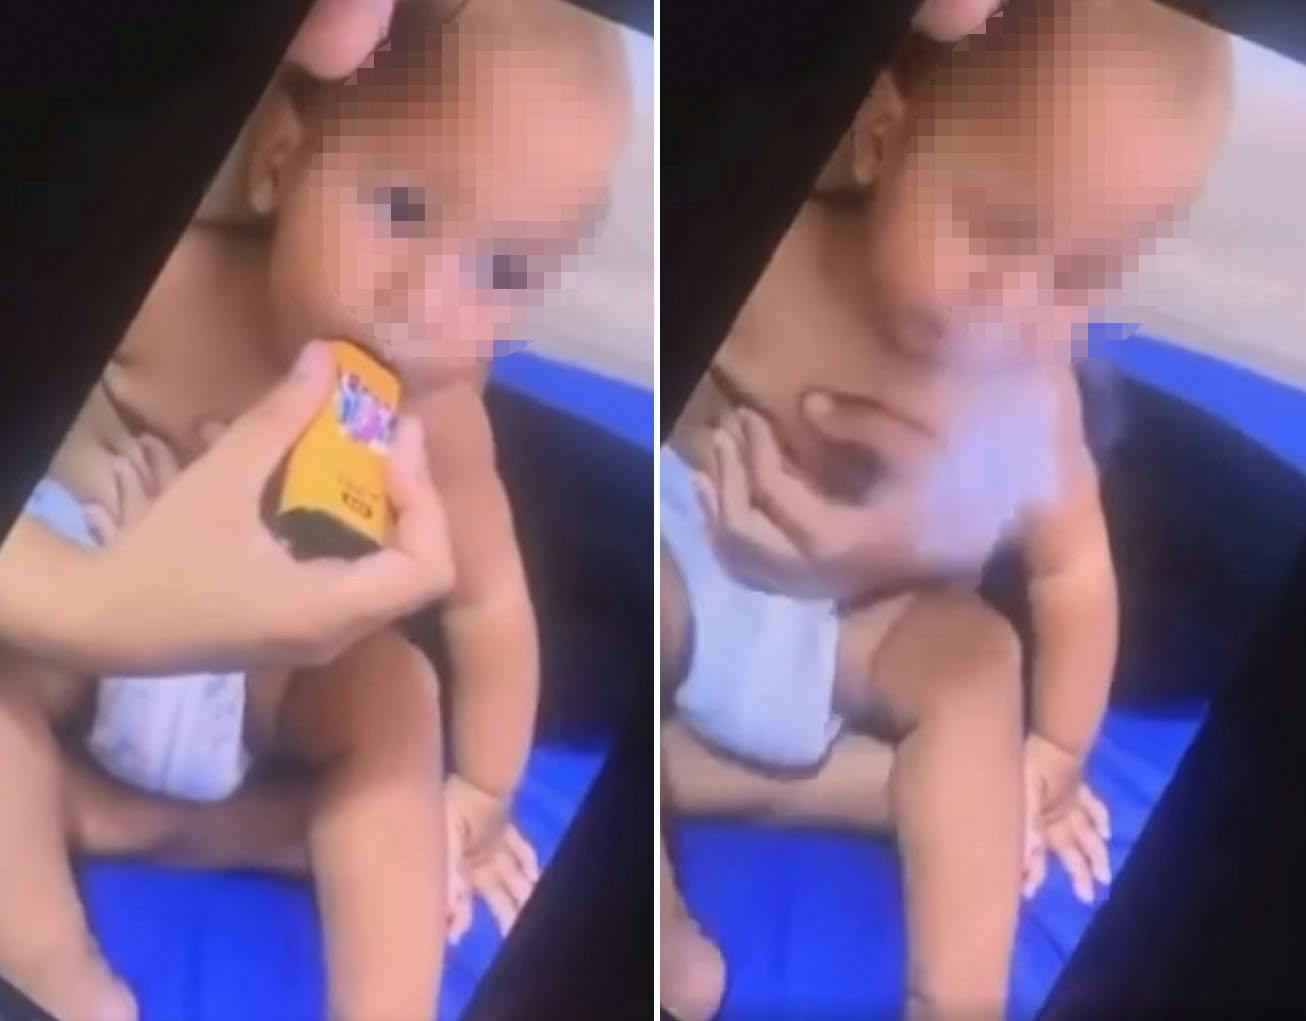 Det er dette klip af en 10 måneder gammel dreng, der får lov at vape af sin mor, der vækker harme. nbsp;